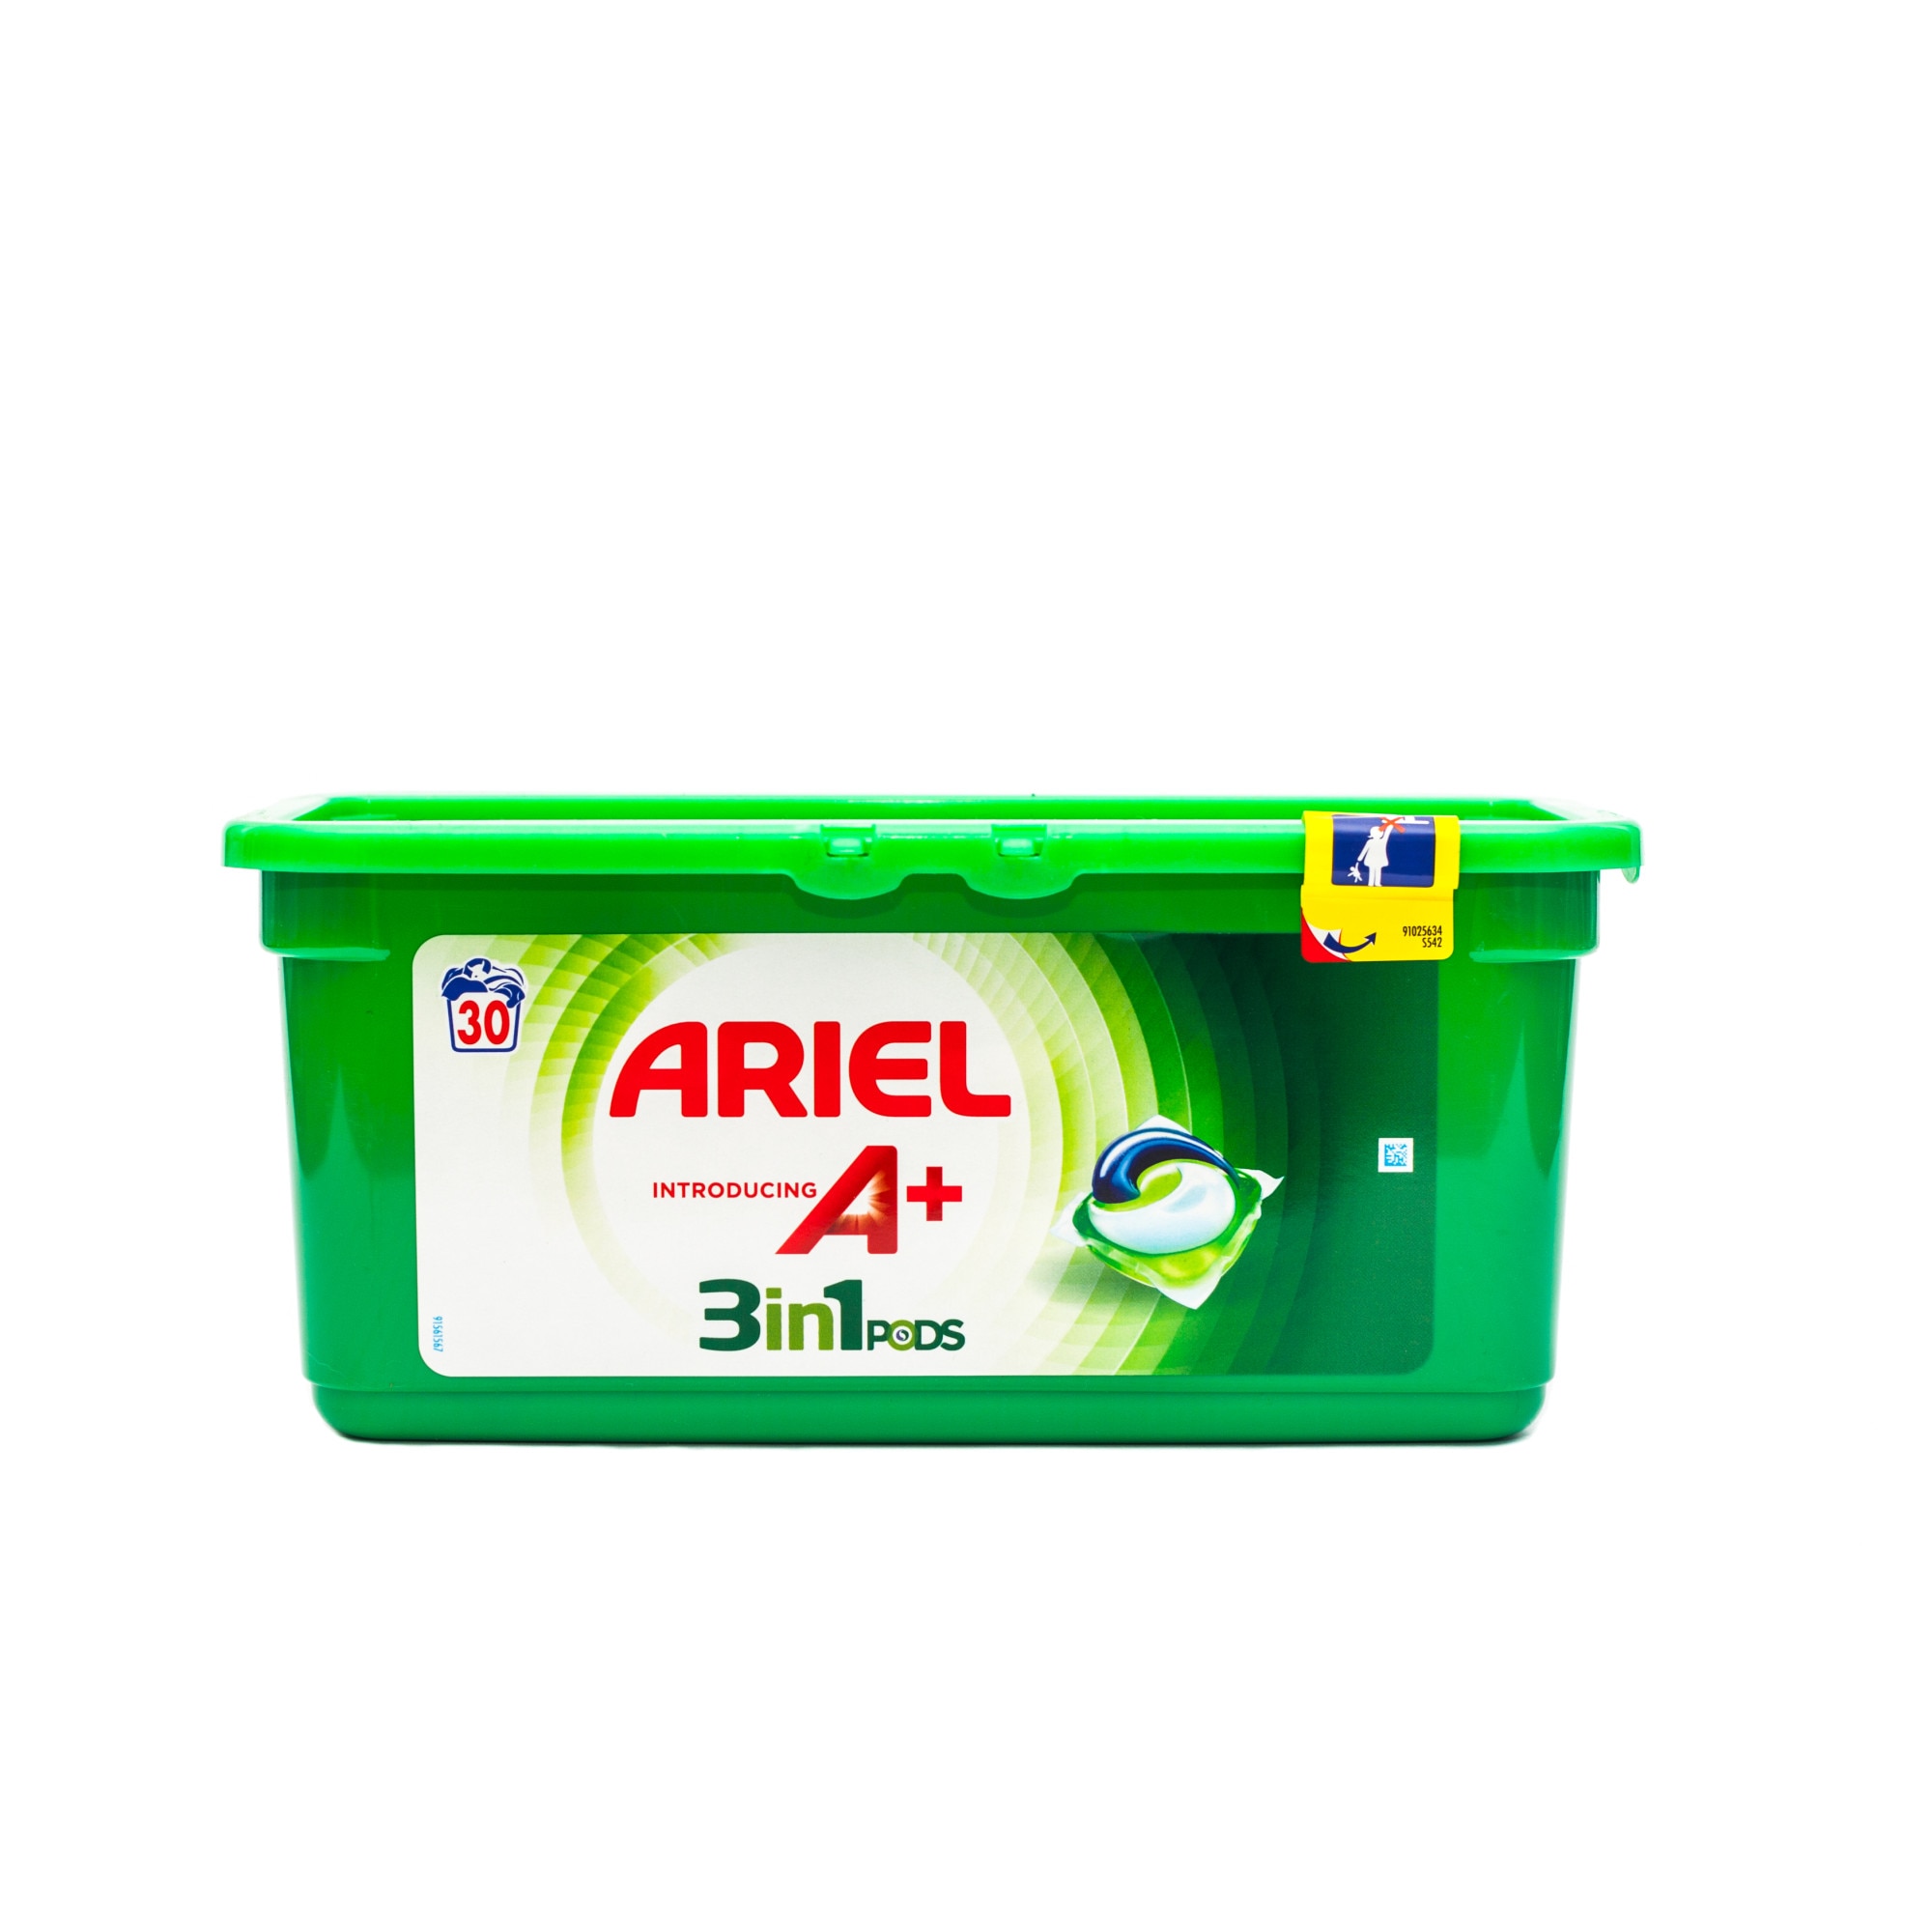 Ariel 3 in 1 Pods Laundry Detergent Capsules Original 12s